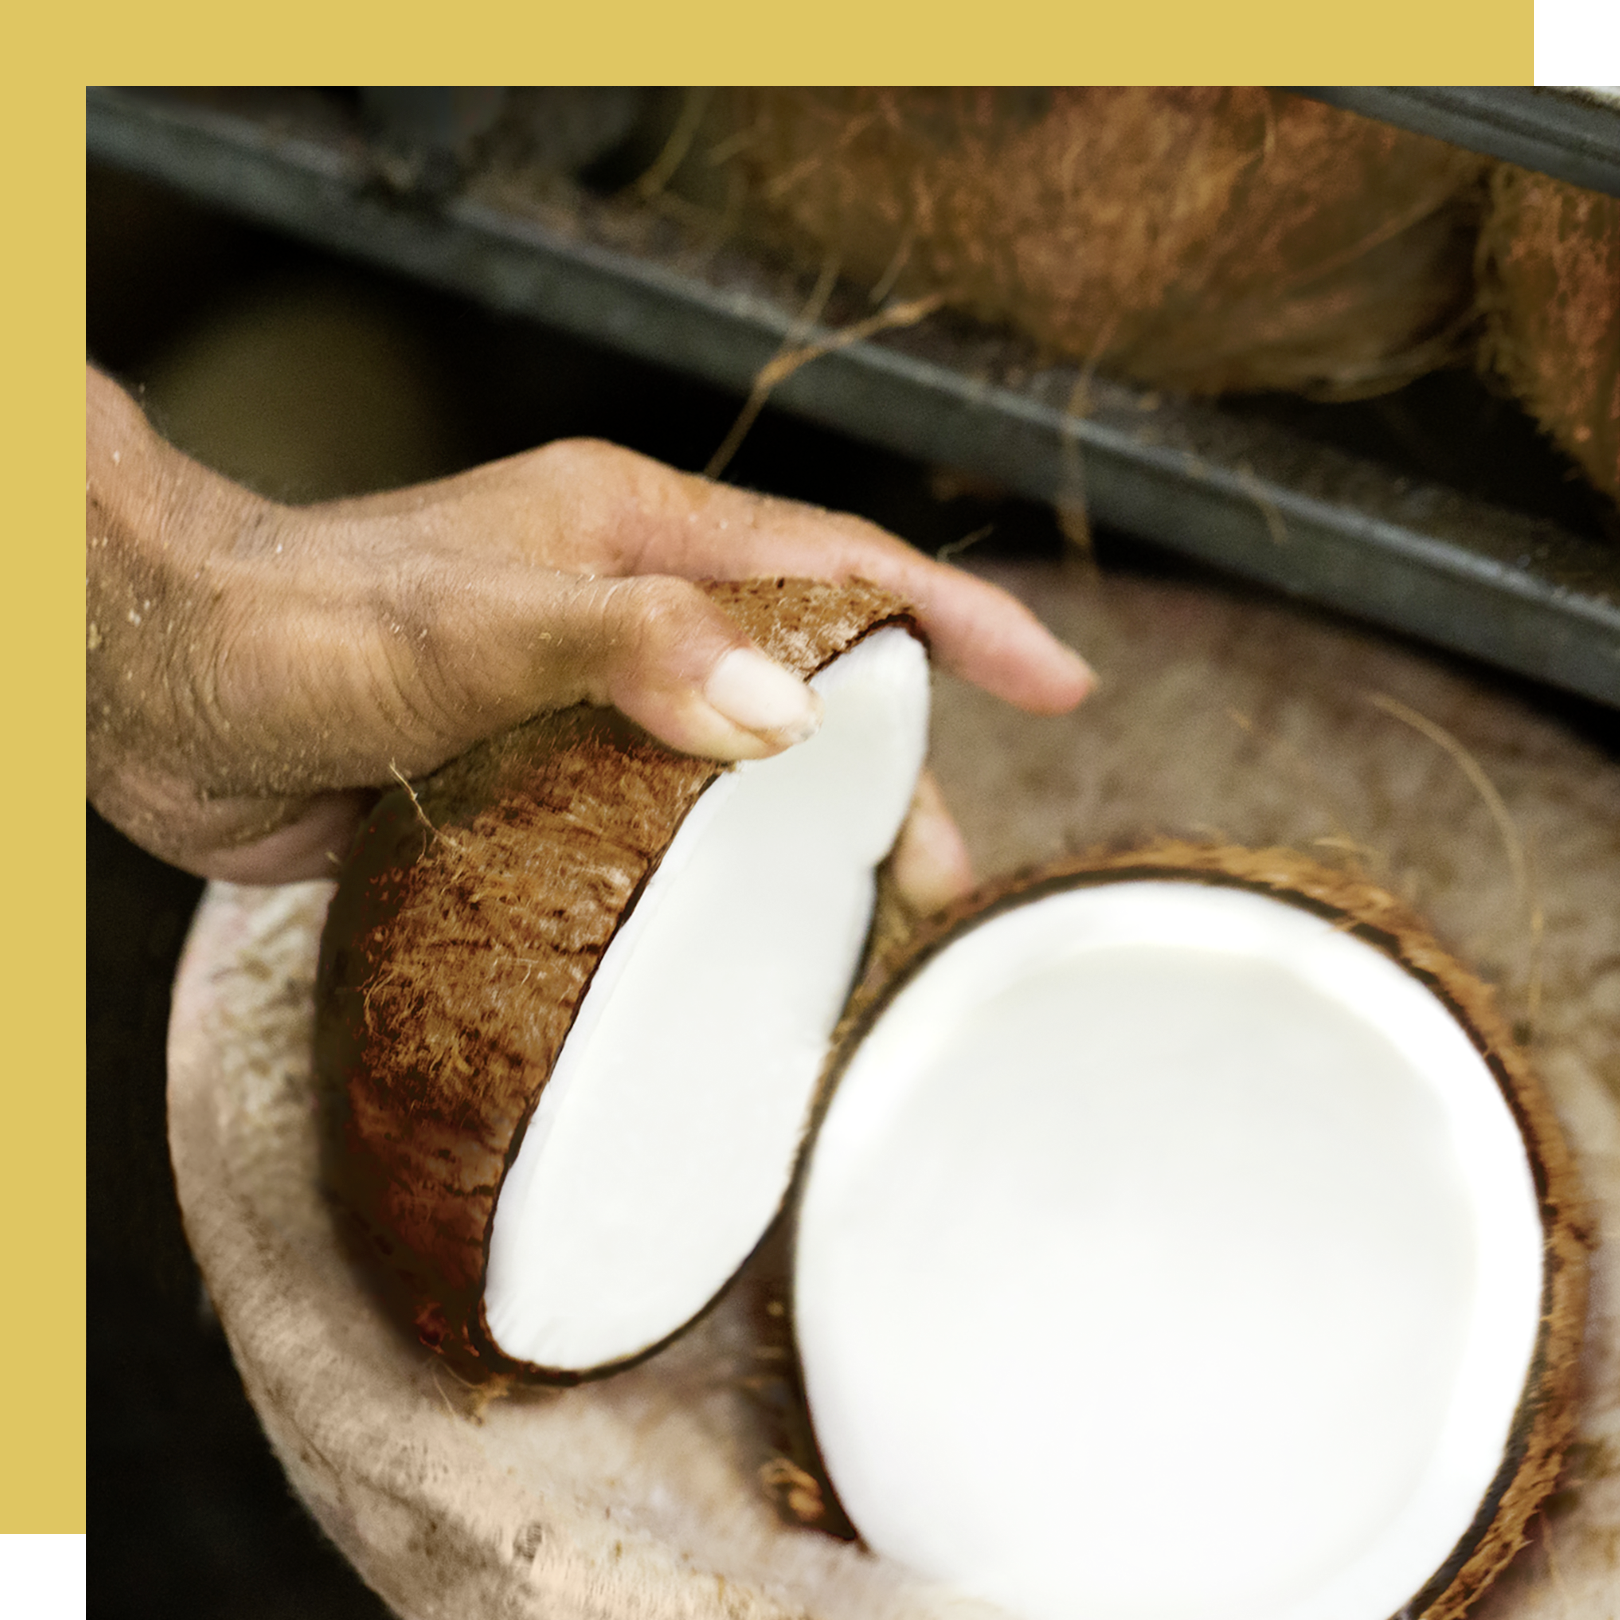 Pessoa abrindo cocos, utilizados para a produção de Óleo de coco para o shampoo ylang ylang e outros produtos Love Beauty and Planet Text